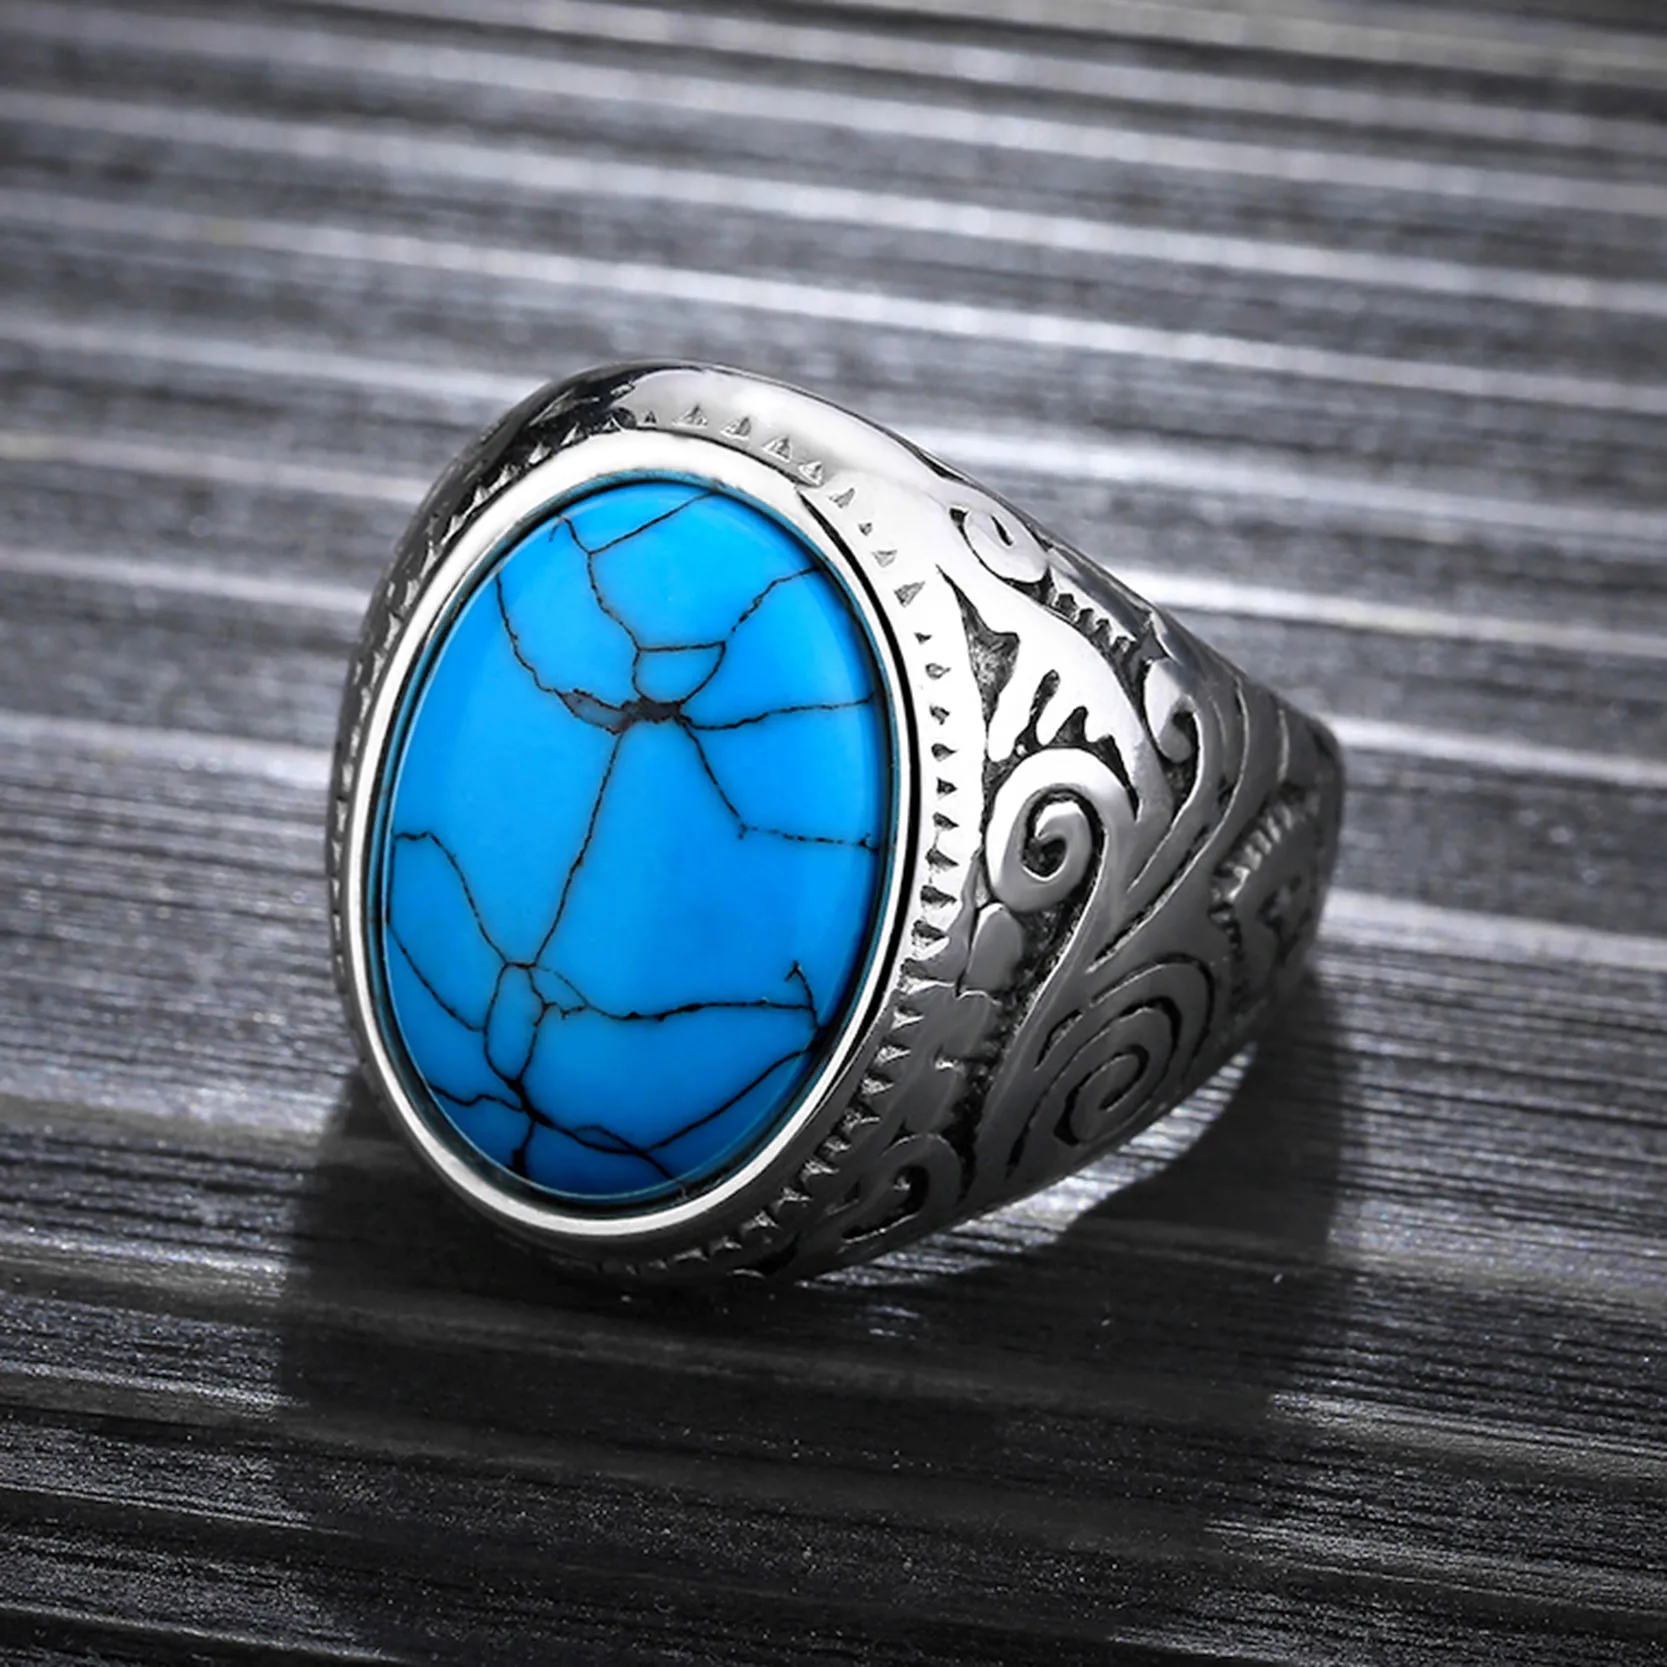 Jiayiqi винтажное мужское кольцо с синим камнем полированная нержавеющая сталь мужские ювелирные изделия цвет серебра талисман кольцо для мужчин Высокое качество